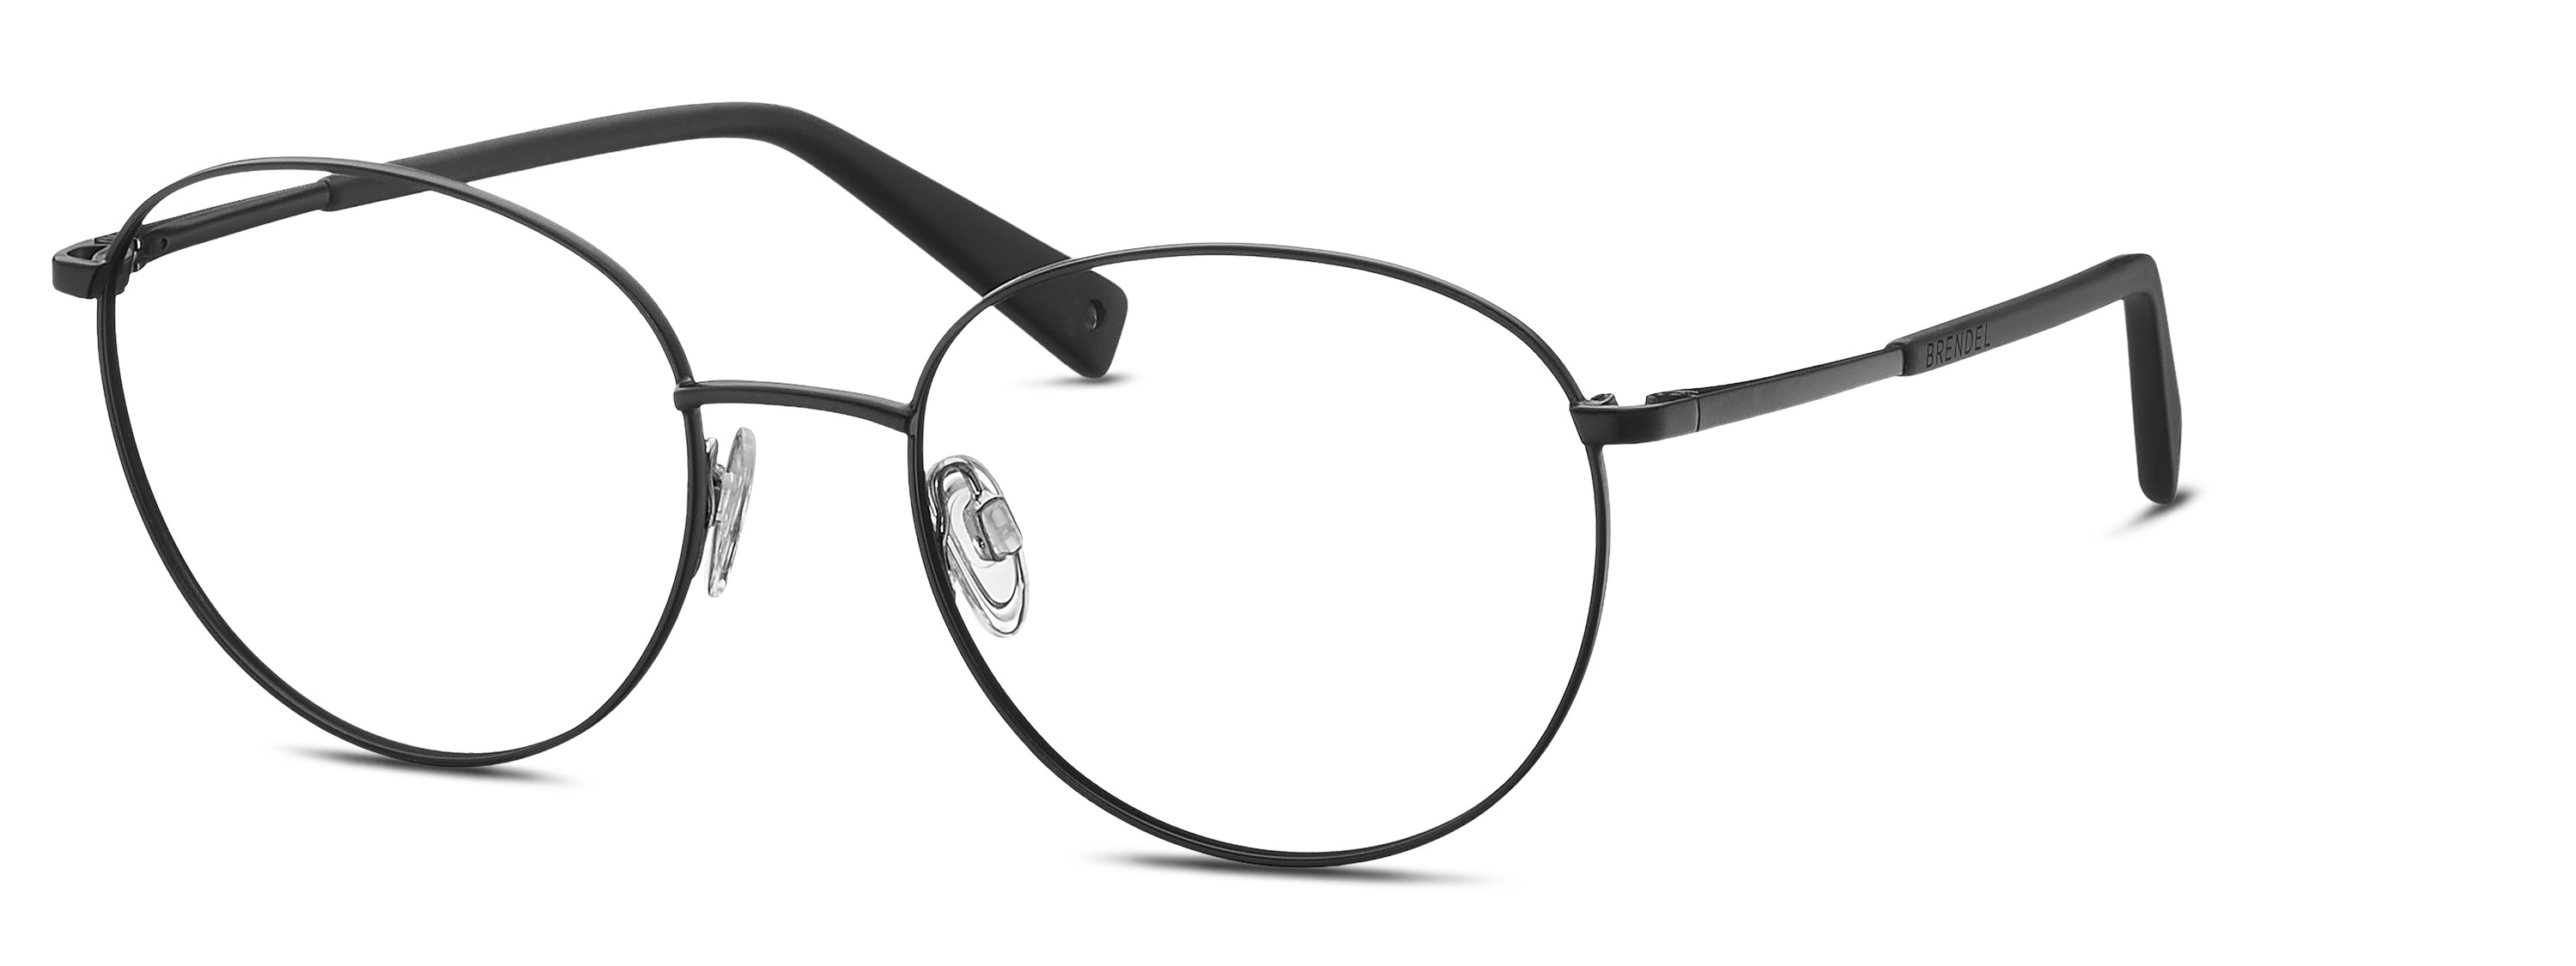 BRENDEL eyewear - 902324-10